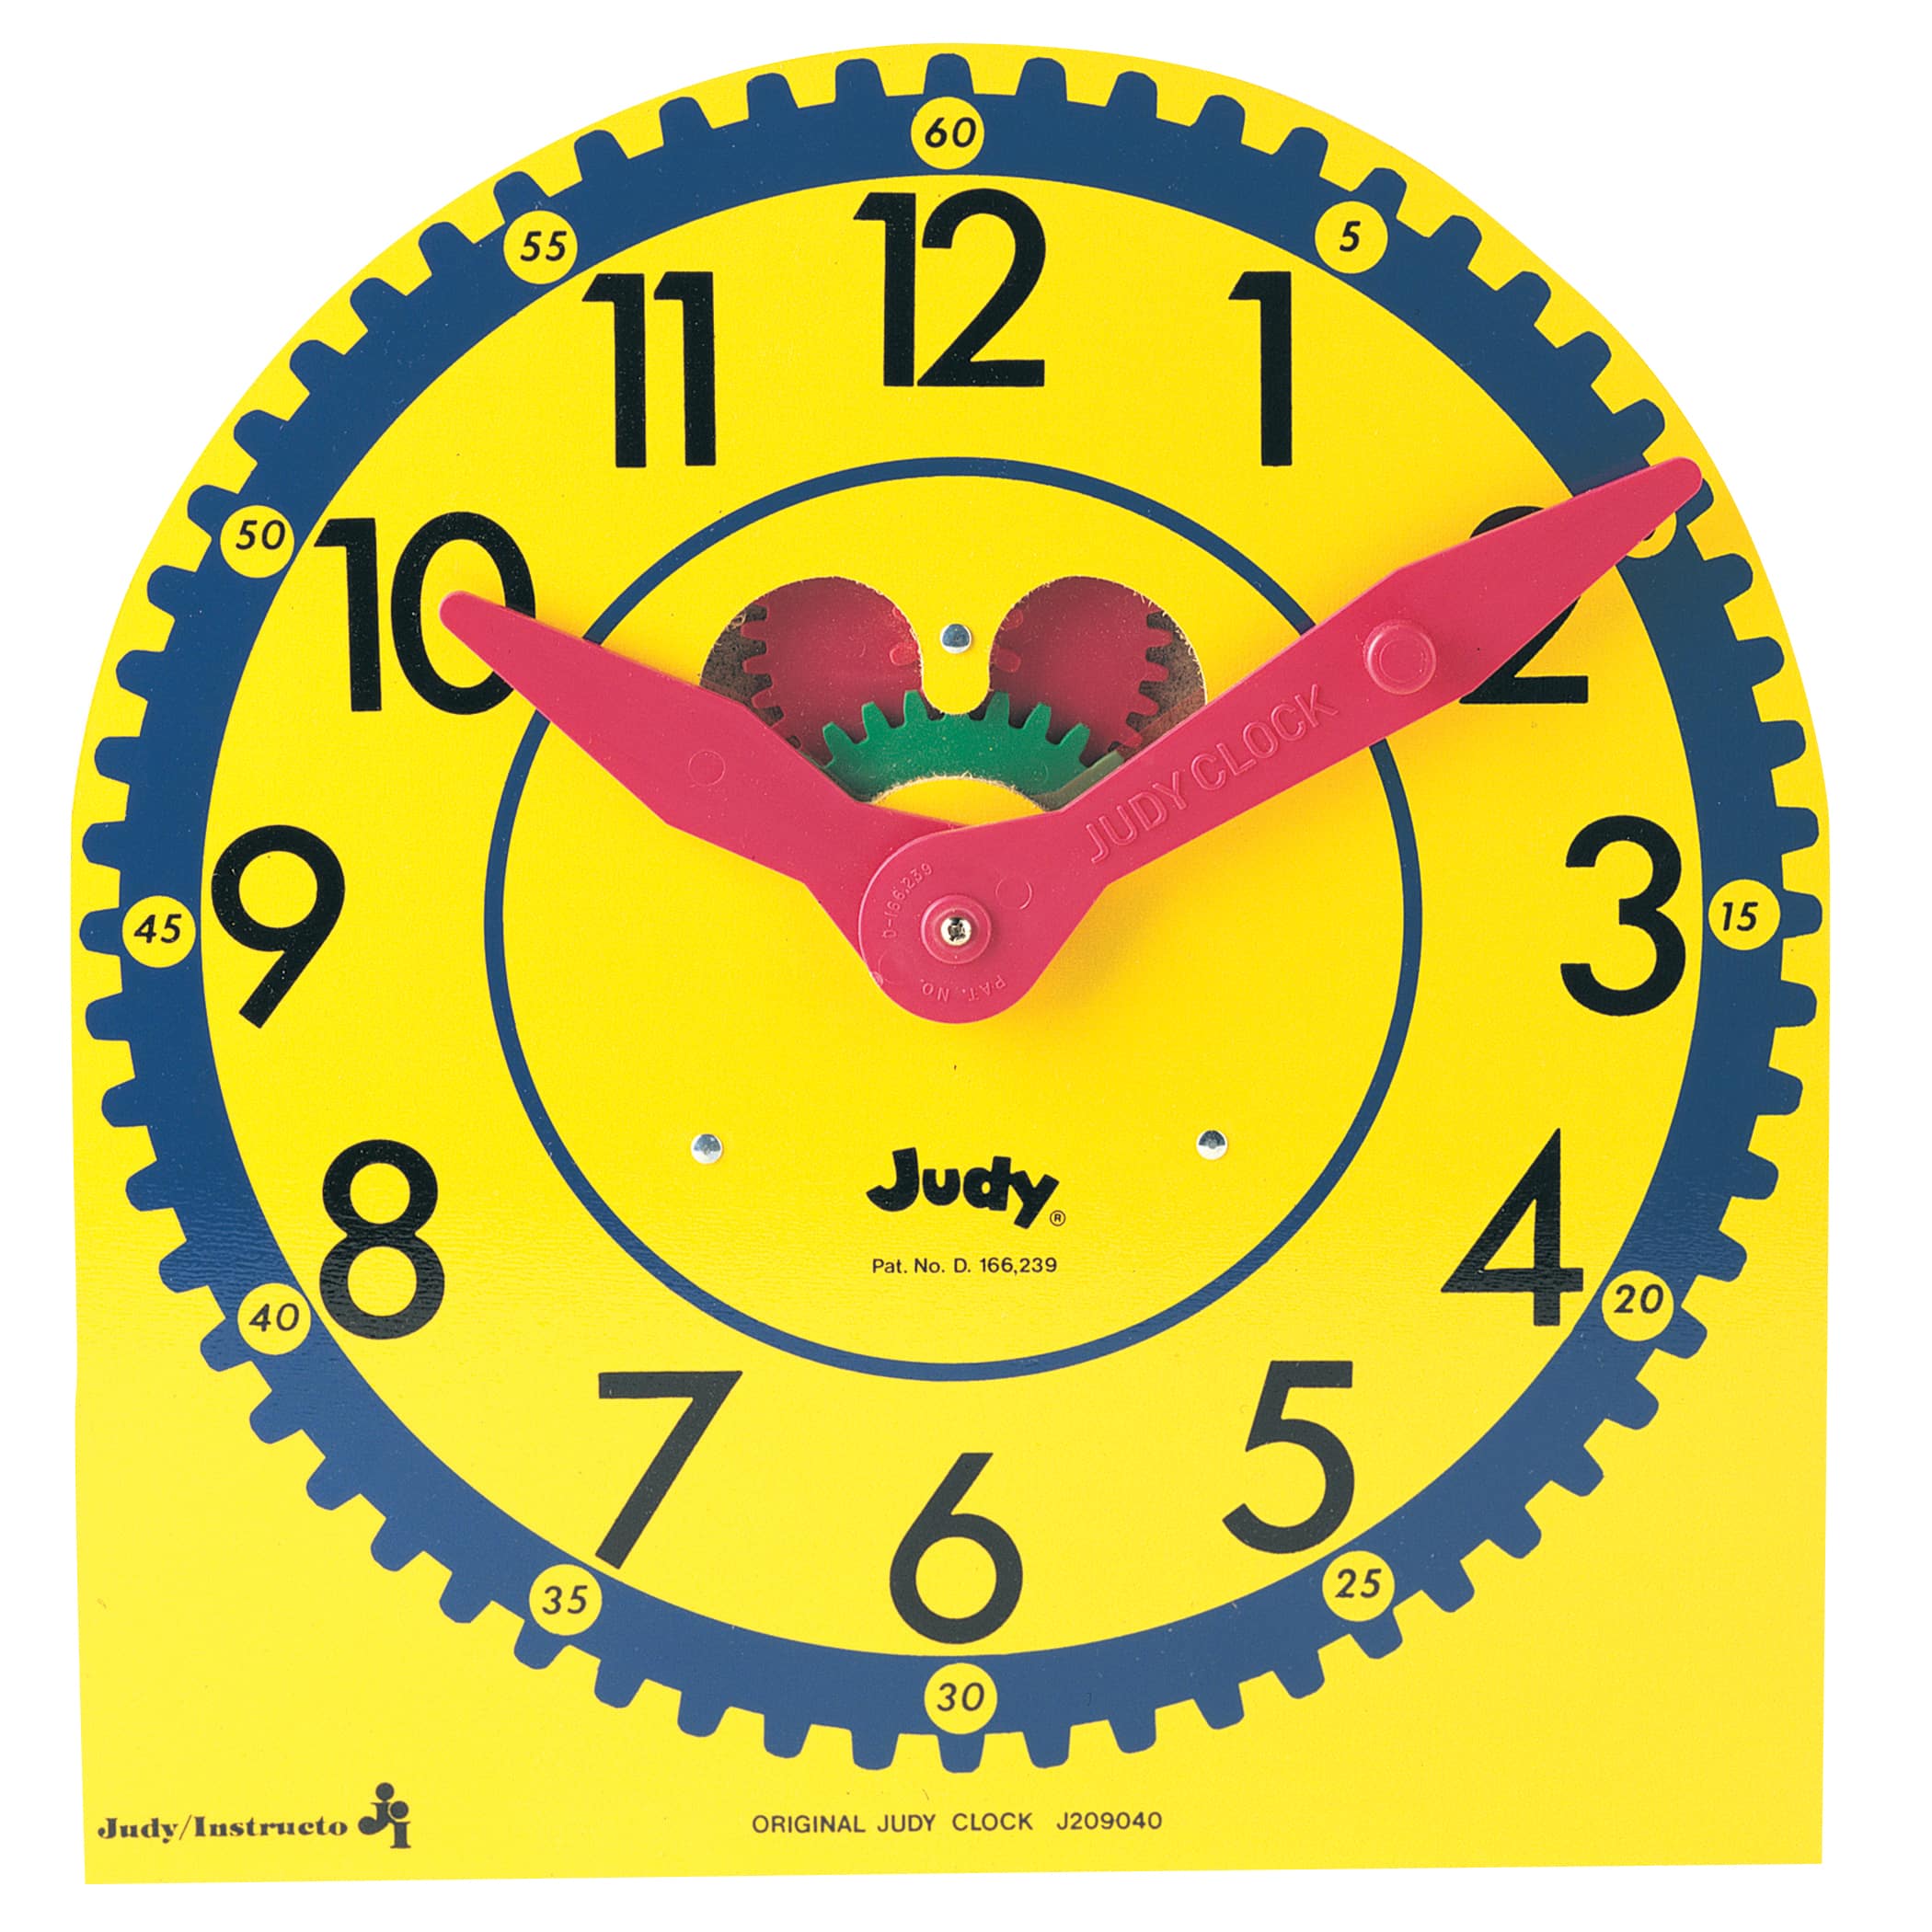 The Original Judy&#xAE; Clock